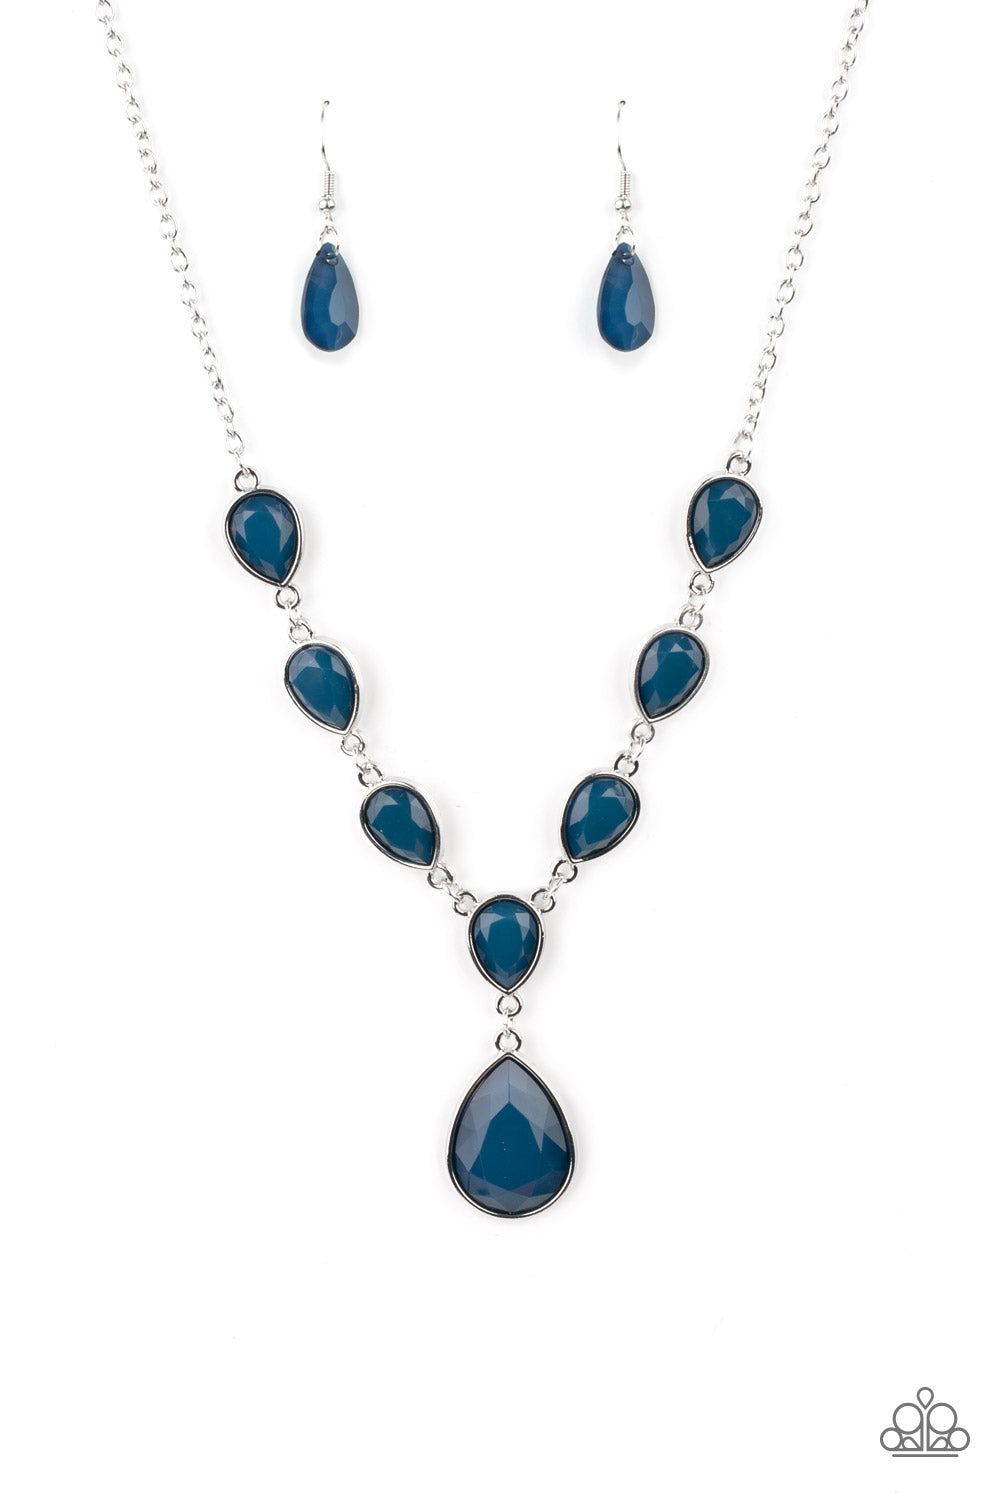 Party Paradise - Blue Necklace freeshipping - JewLz4u Gemstone Gallery